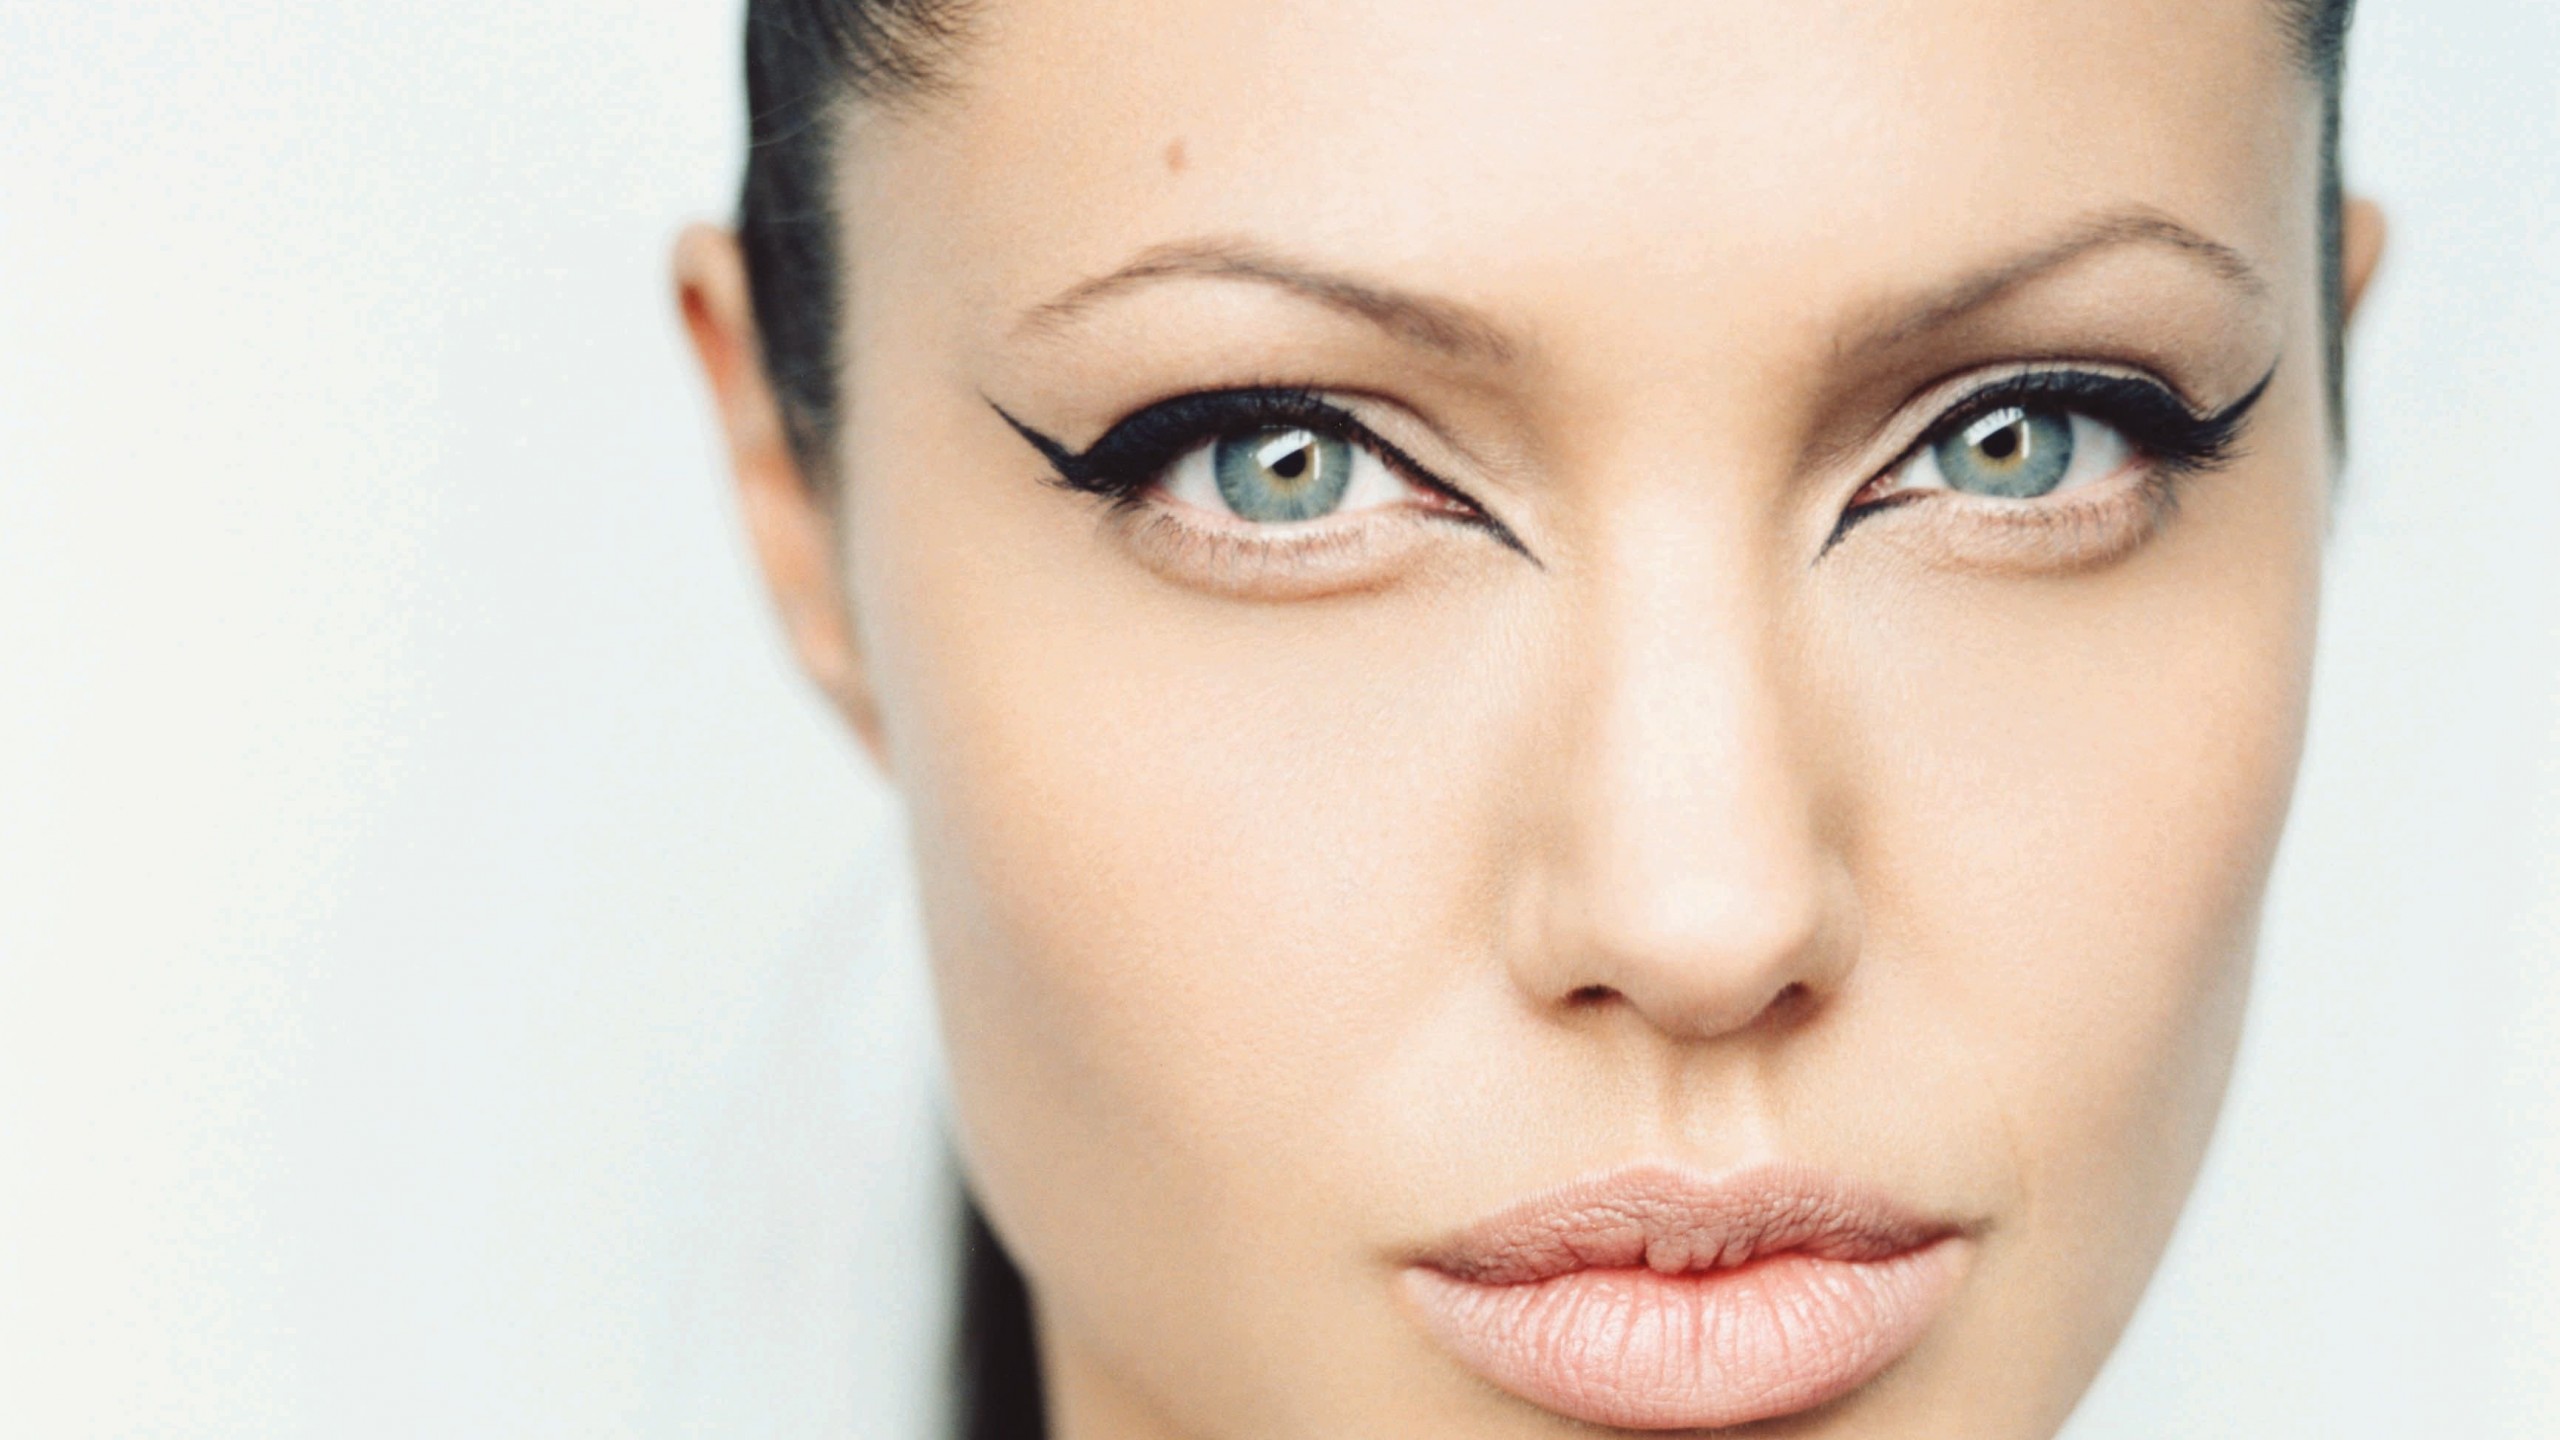 Angelina Jolie Wallpaper for Desktop 2560x1440